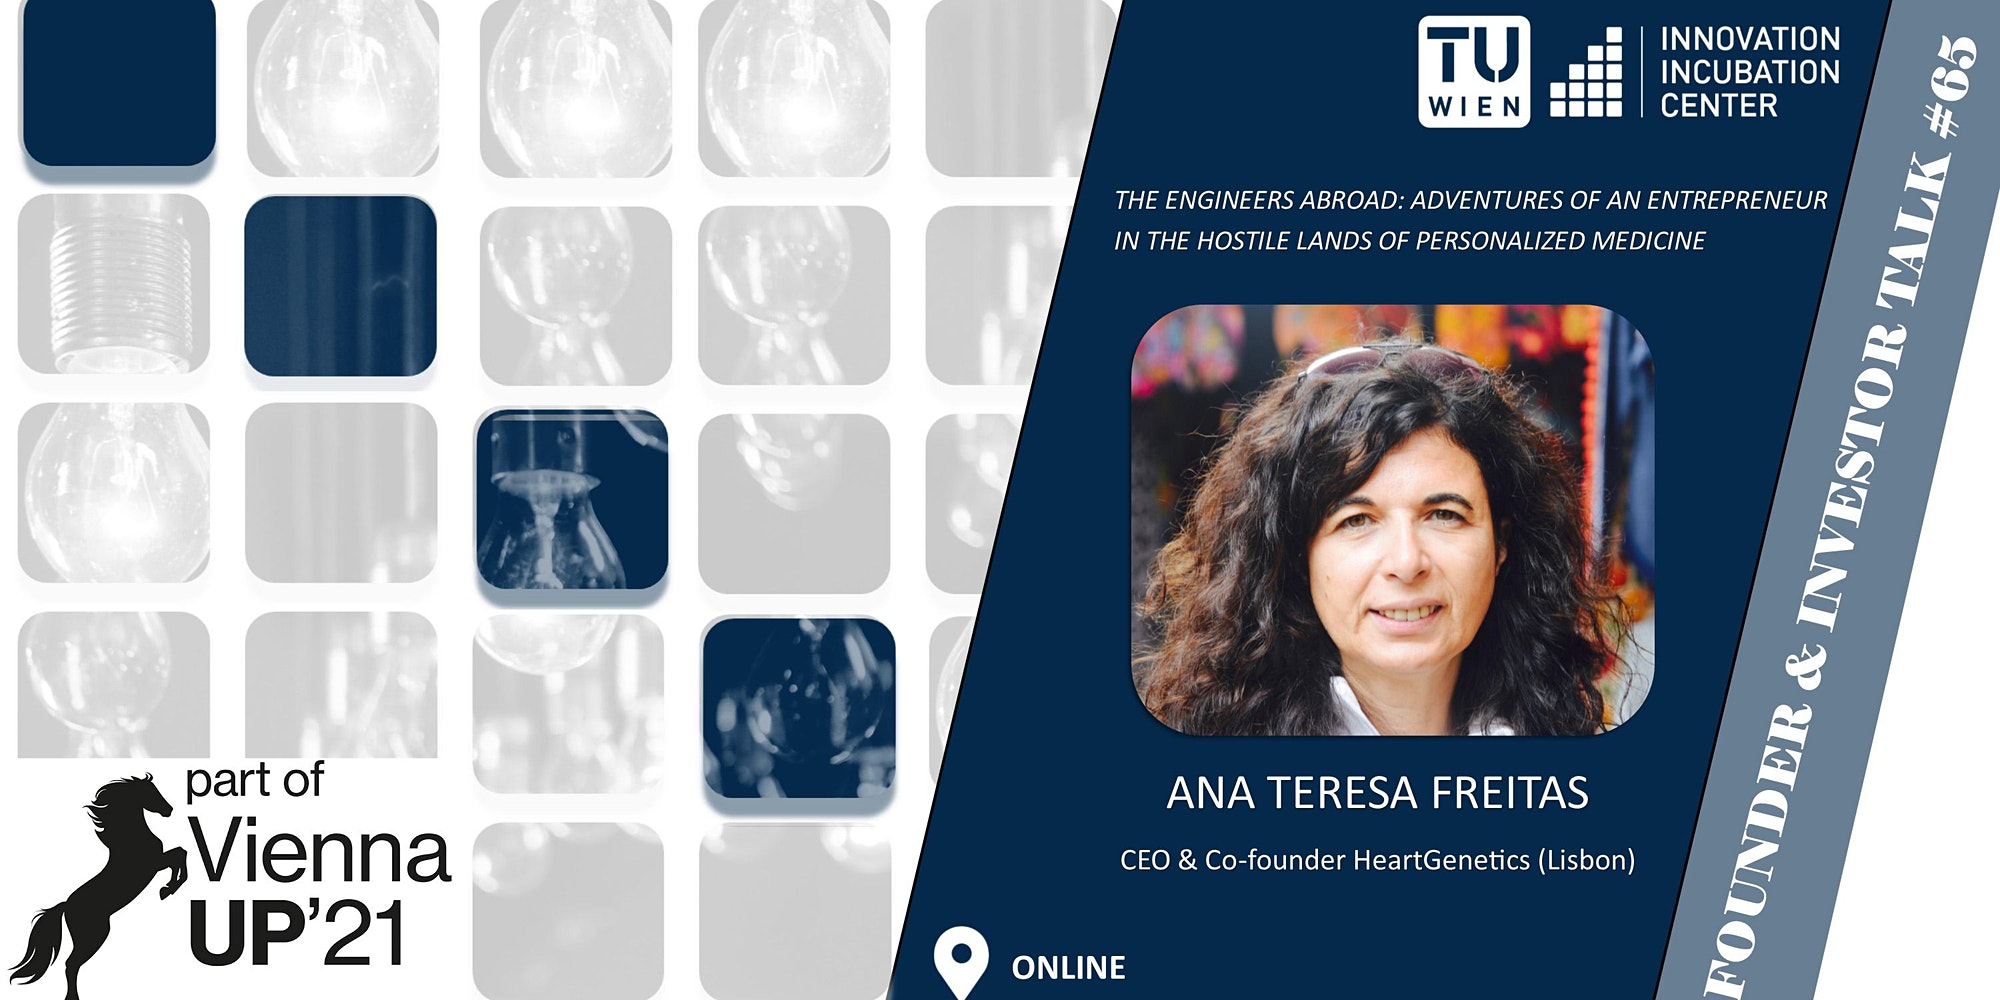 i²c F&I Talk #65: Ana Teresa Freitas (CEO & Co-founder HeartGenetics ...